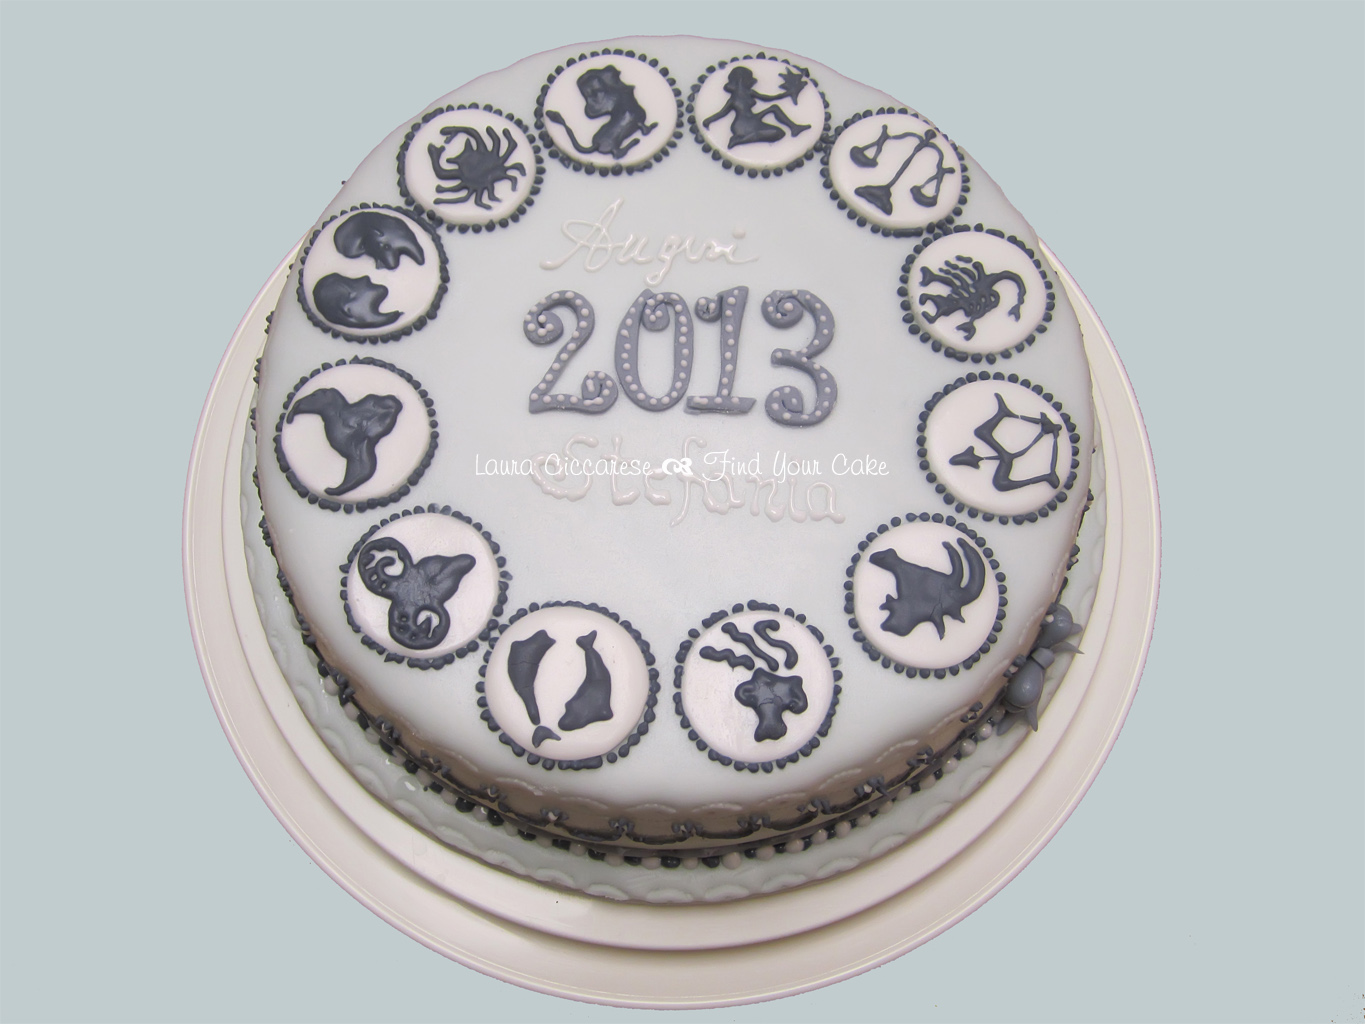 Torta con zodiaco 2013_23_EDIT